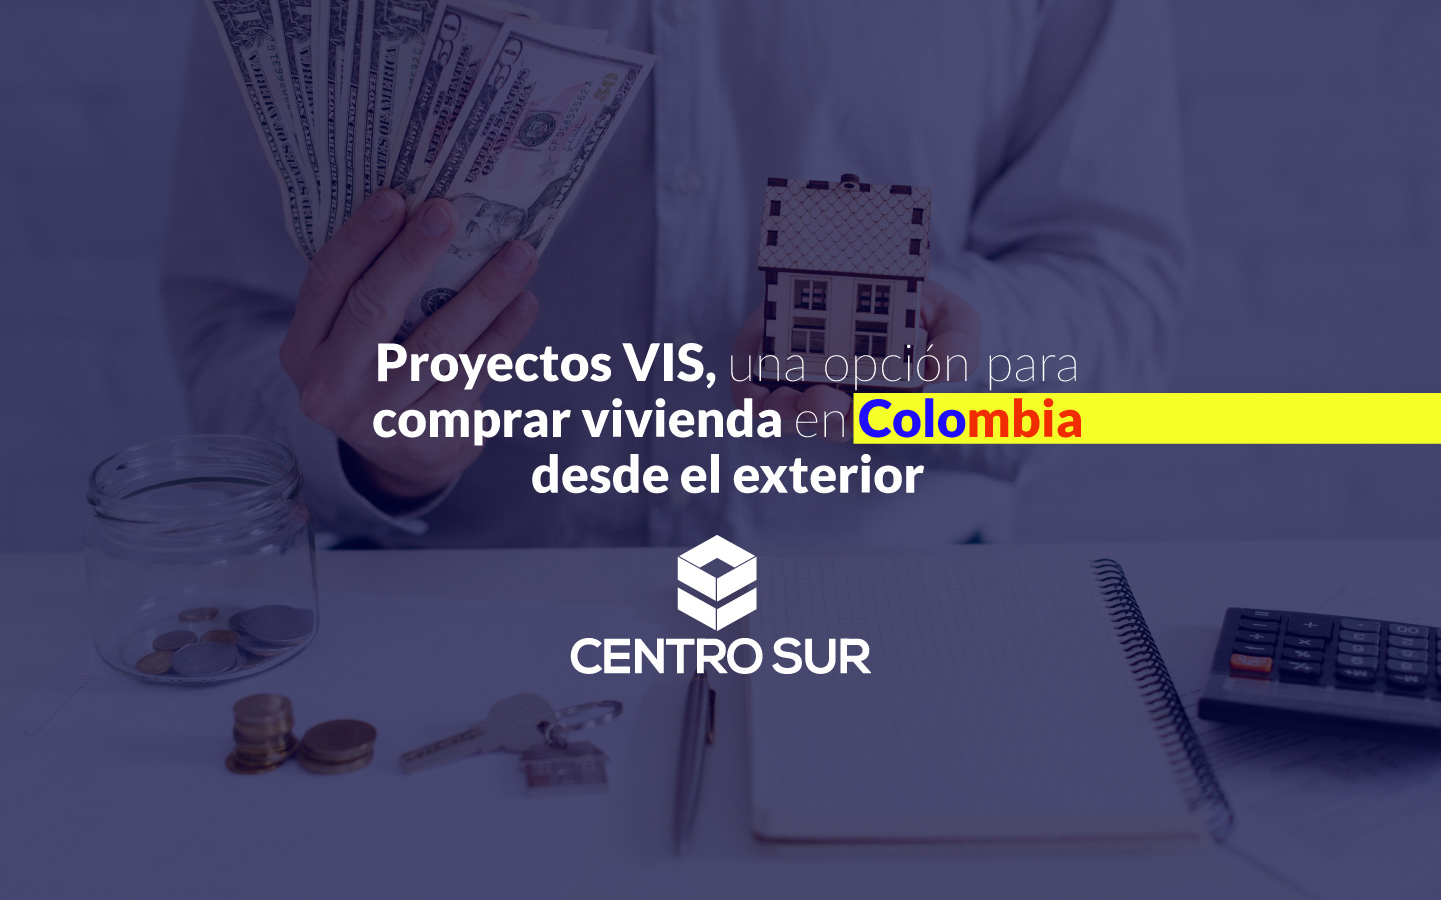 Comprar vivienda en Colombia